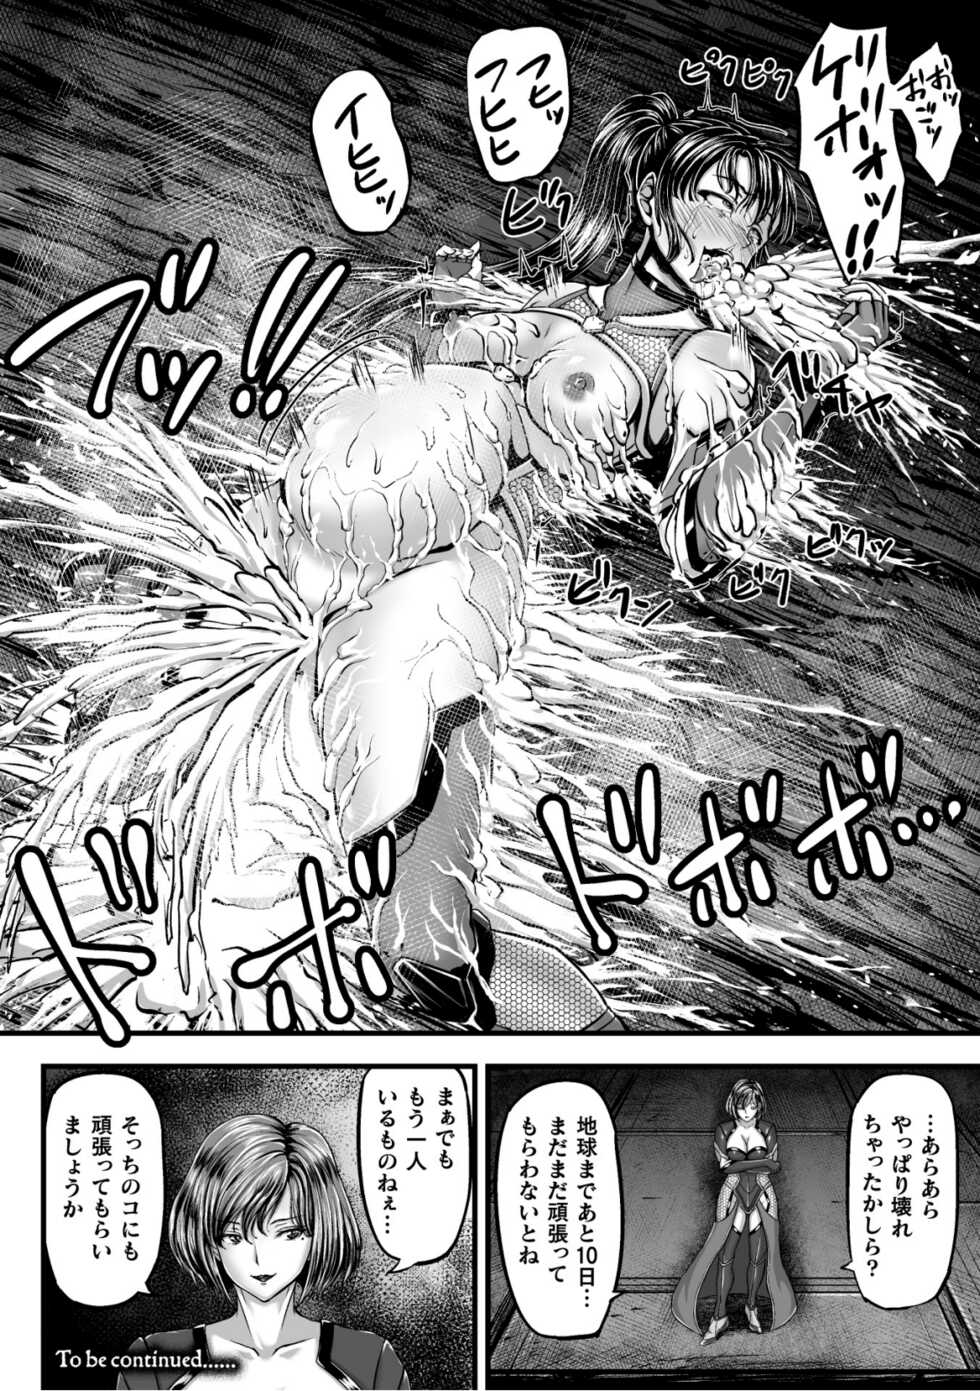 [yuyu] Kangoku Tentacle Battleship Episode 1 - Page 34